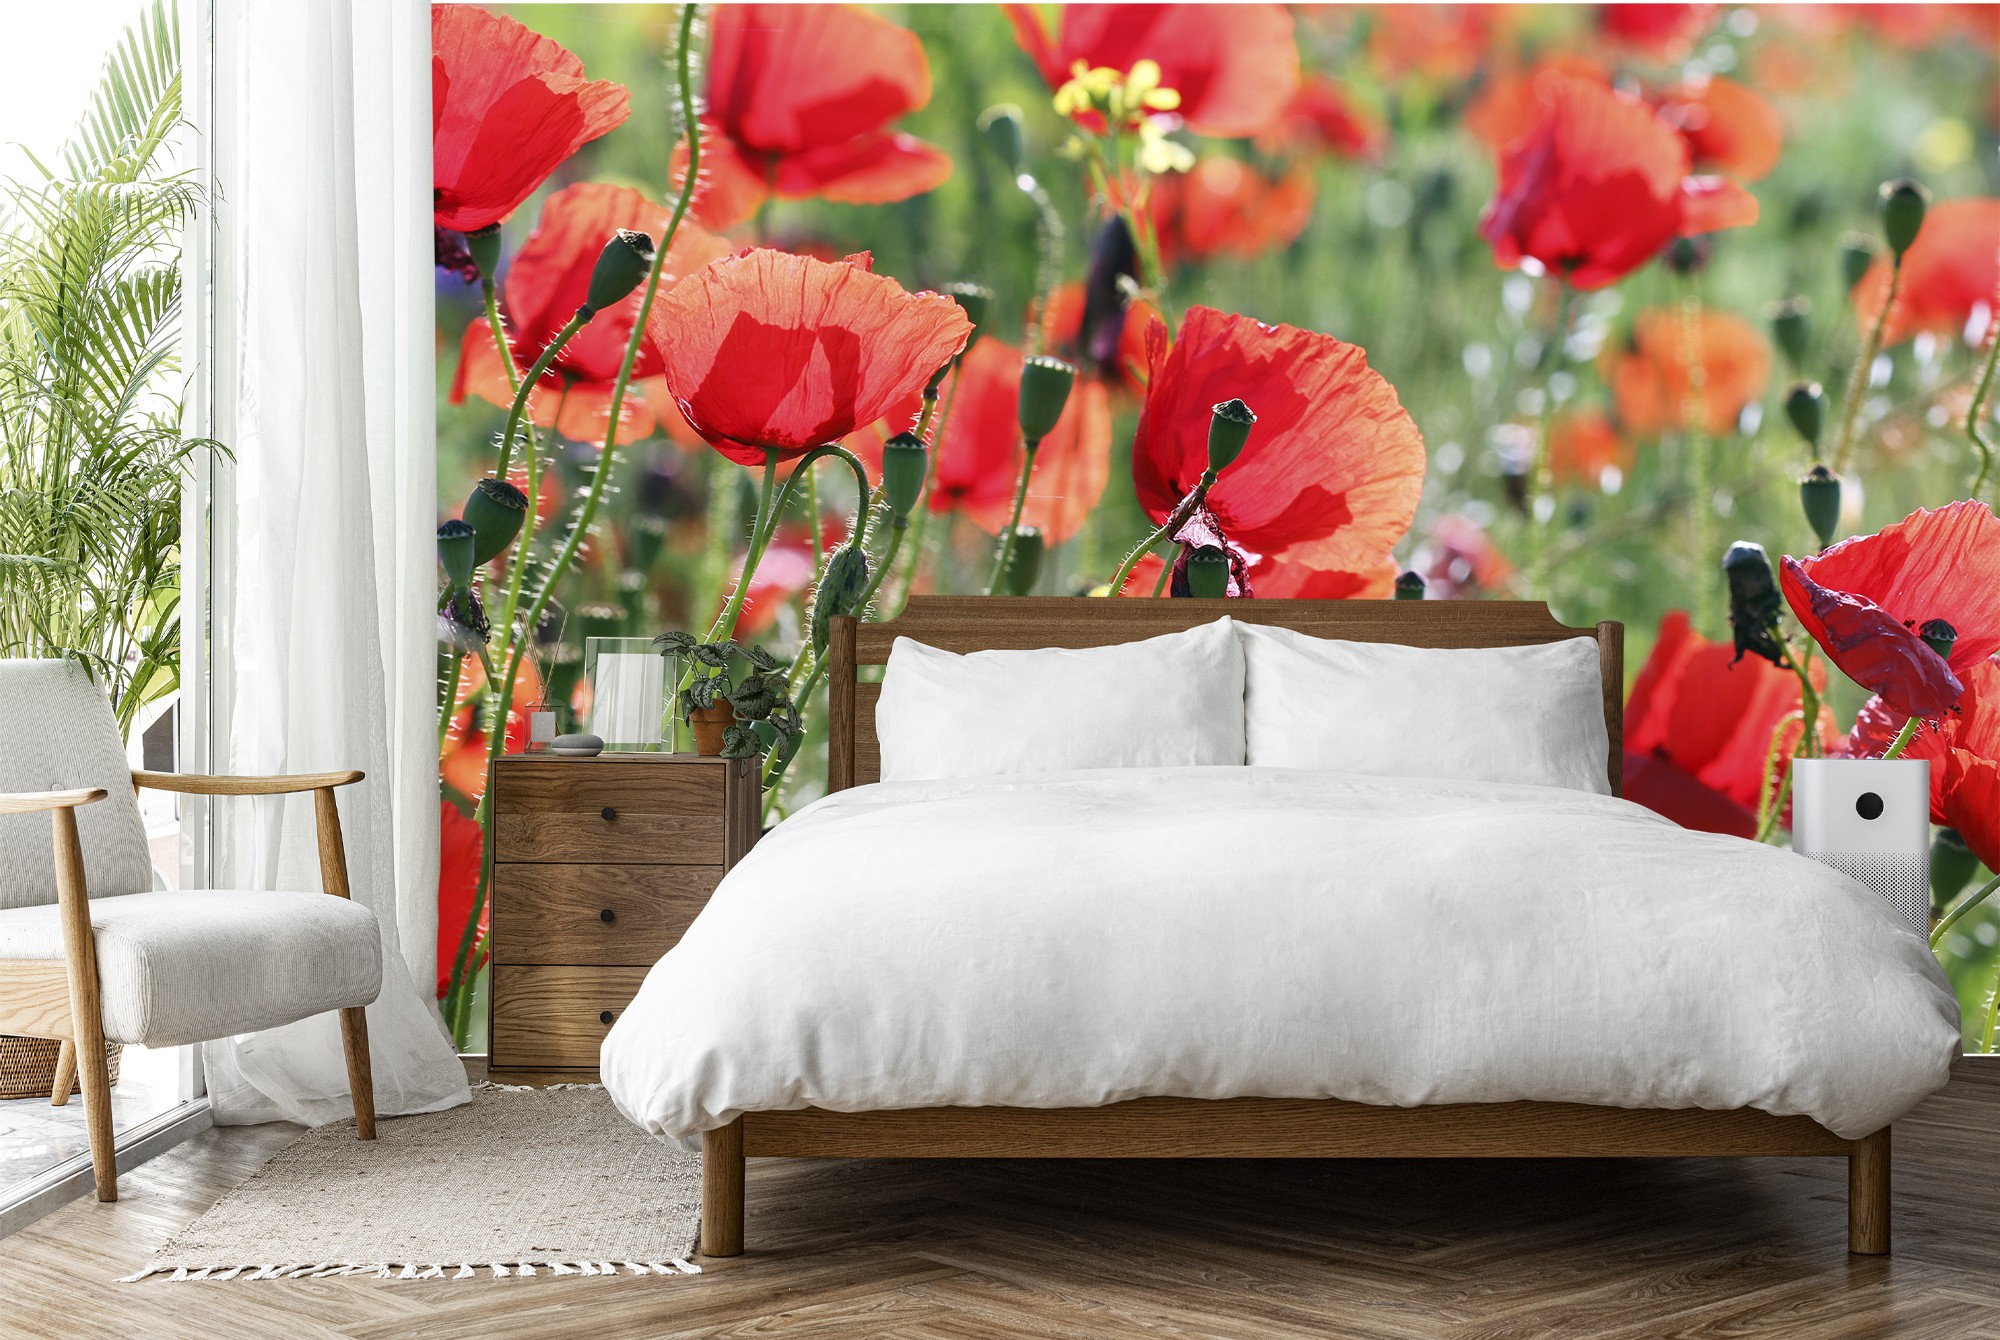 Rote Mohnblumen-Blumen Fototapete Blumenweinlese Tapete Wohnzimmer Dekor 